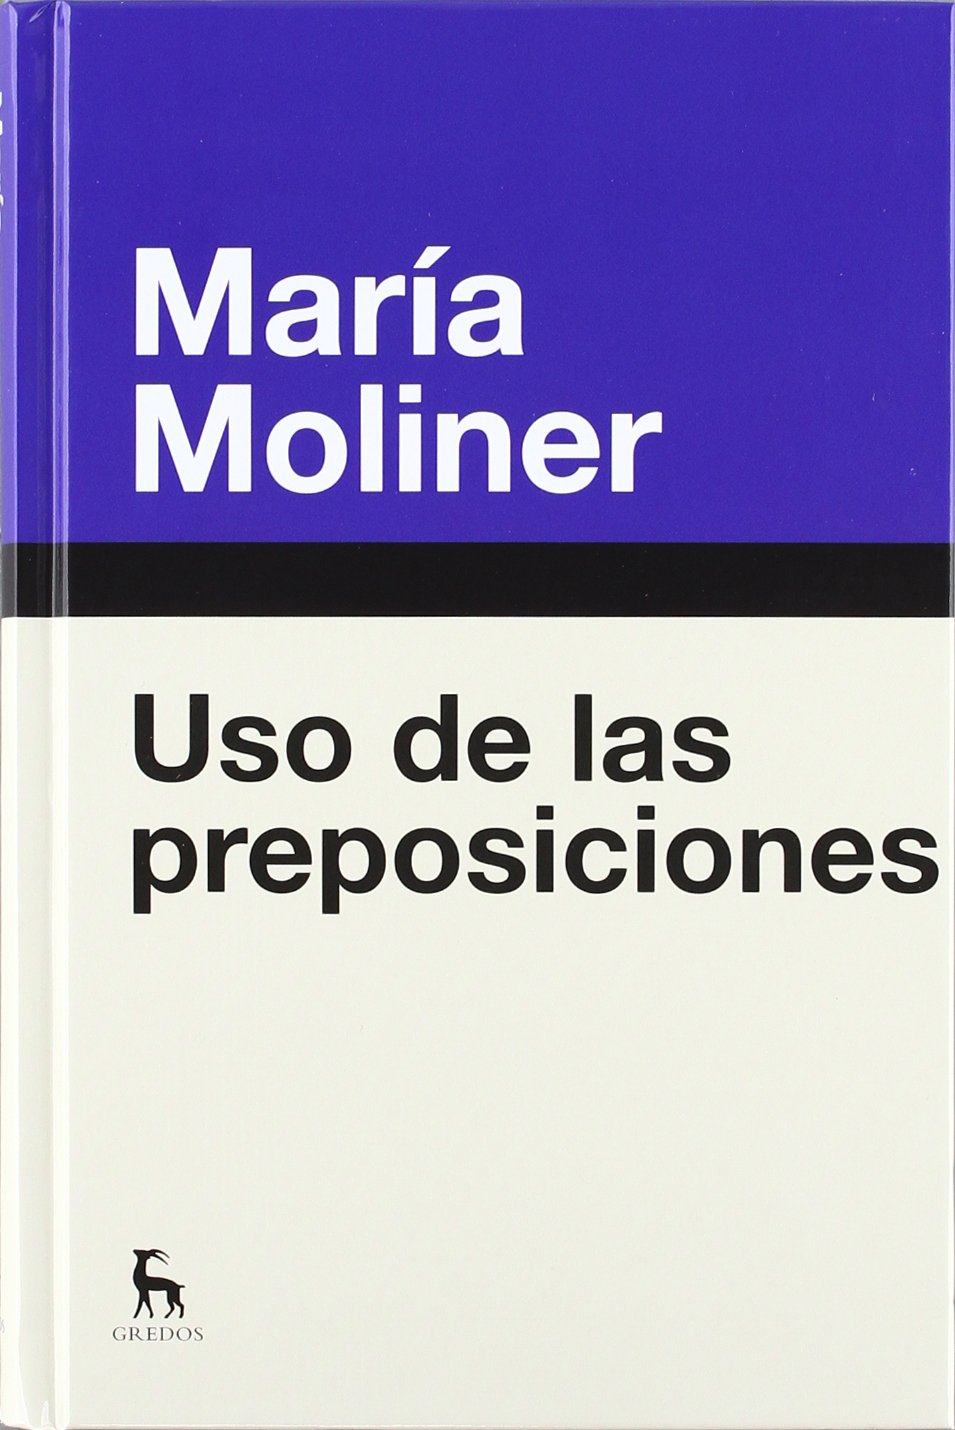 Diccionario Maria Moliner Pdf Viewer